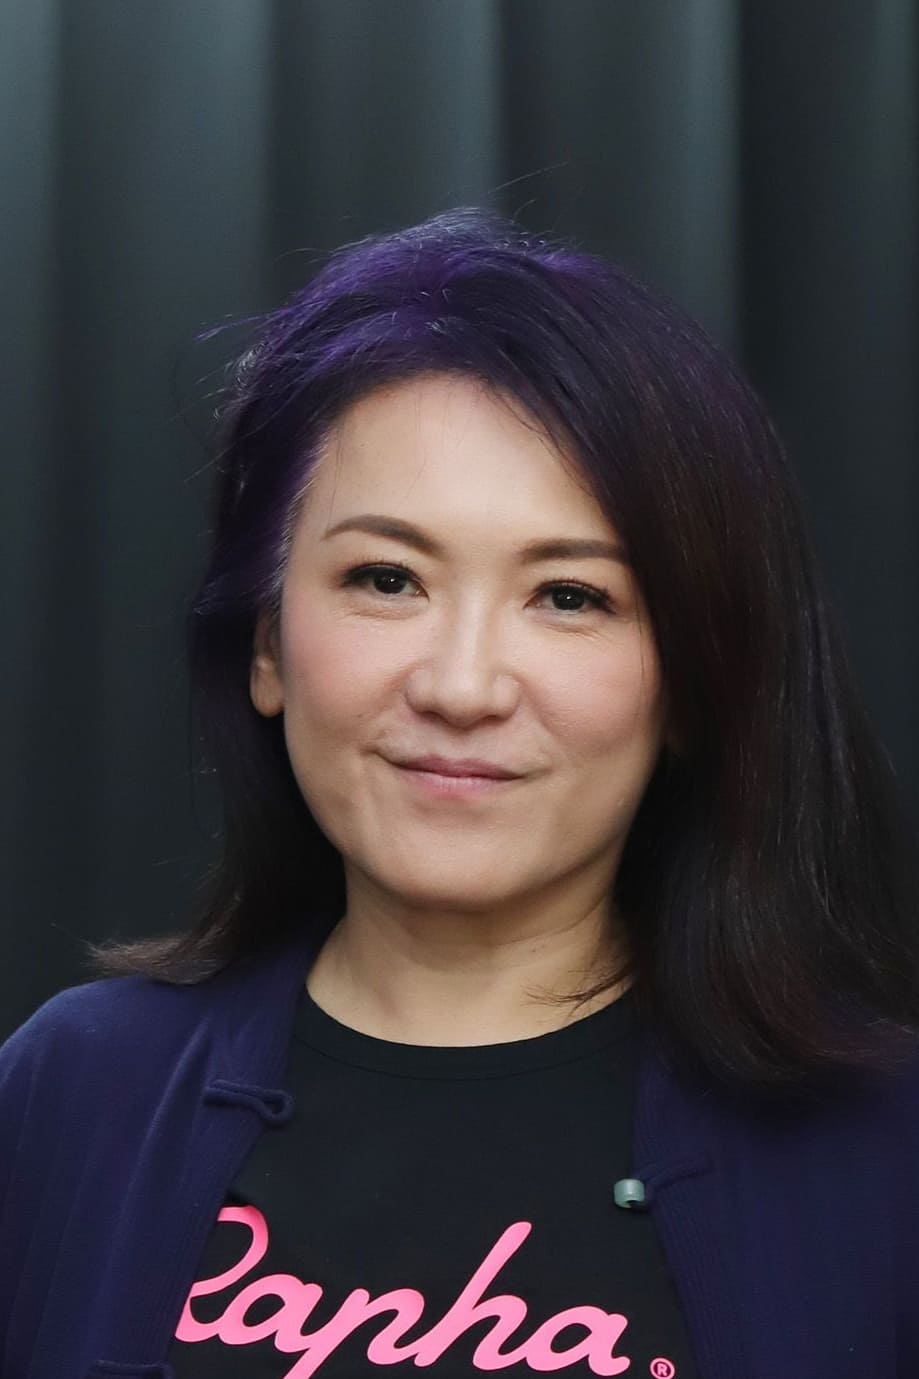 Debbie Yao